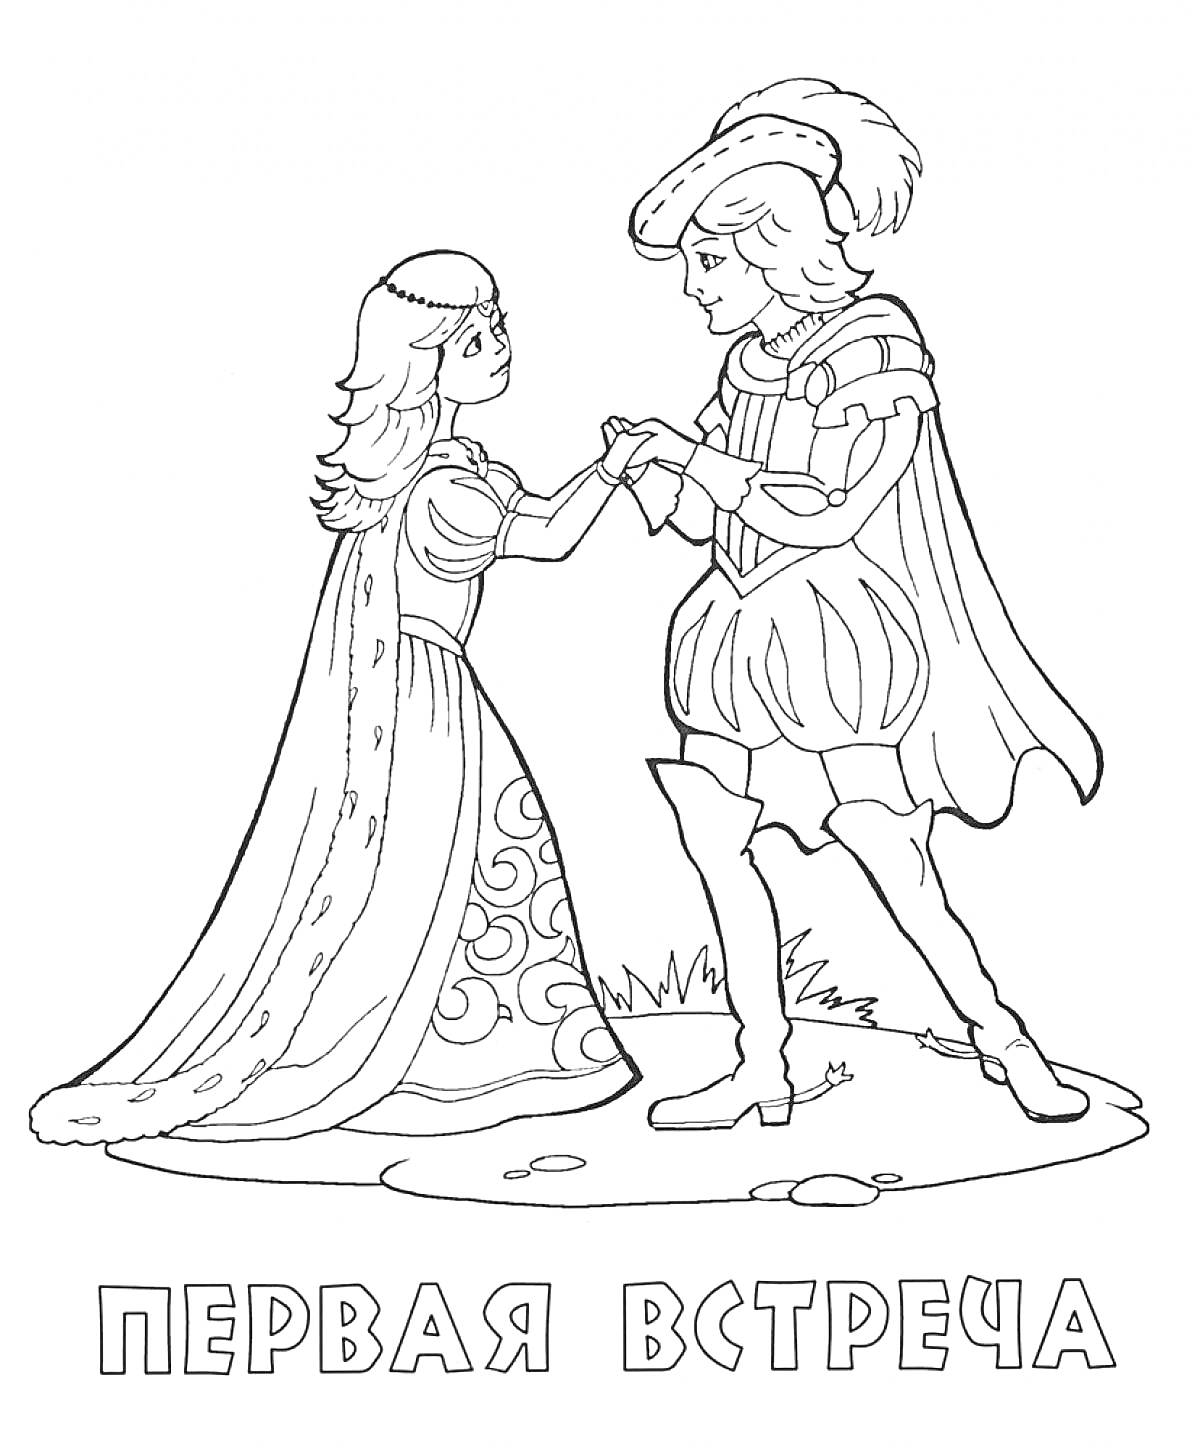 Первая встреча принца и принцессы, принц держит за руку принцессу, принц и принцесса одеты в праздничные наряды, фон: трава и камни.